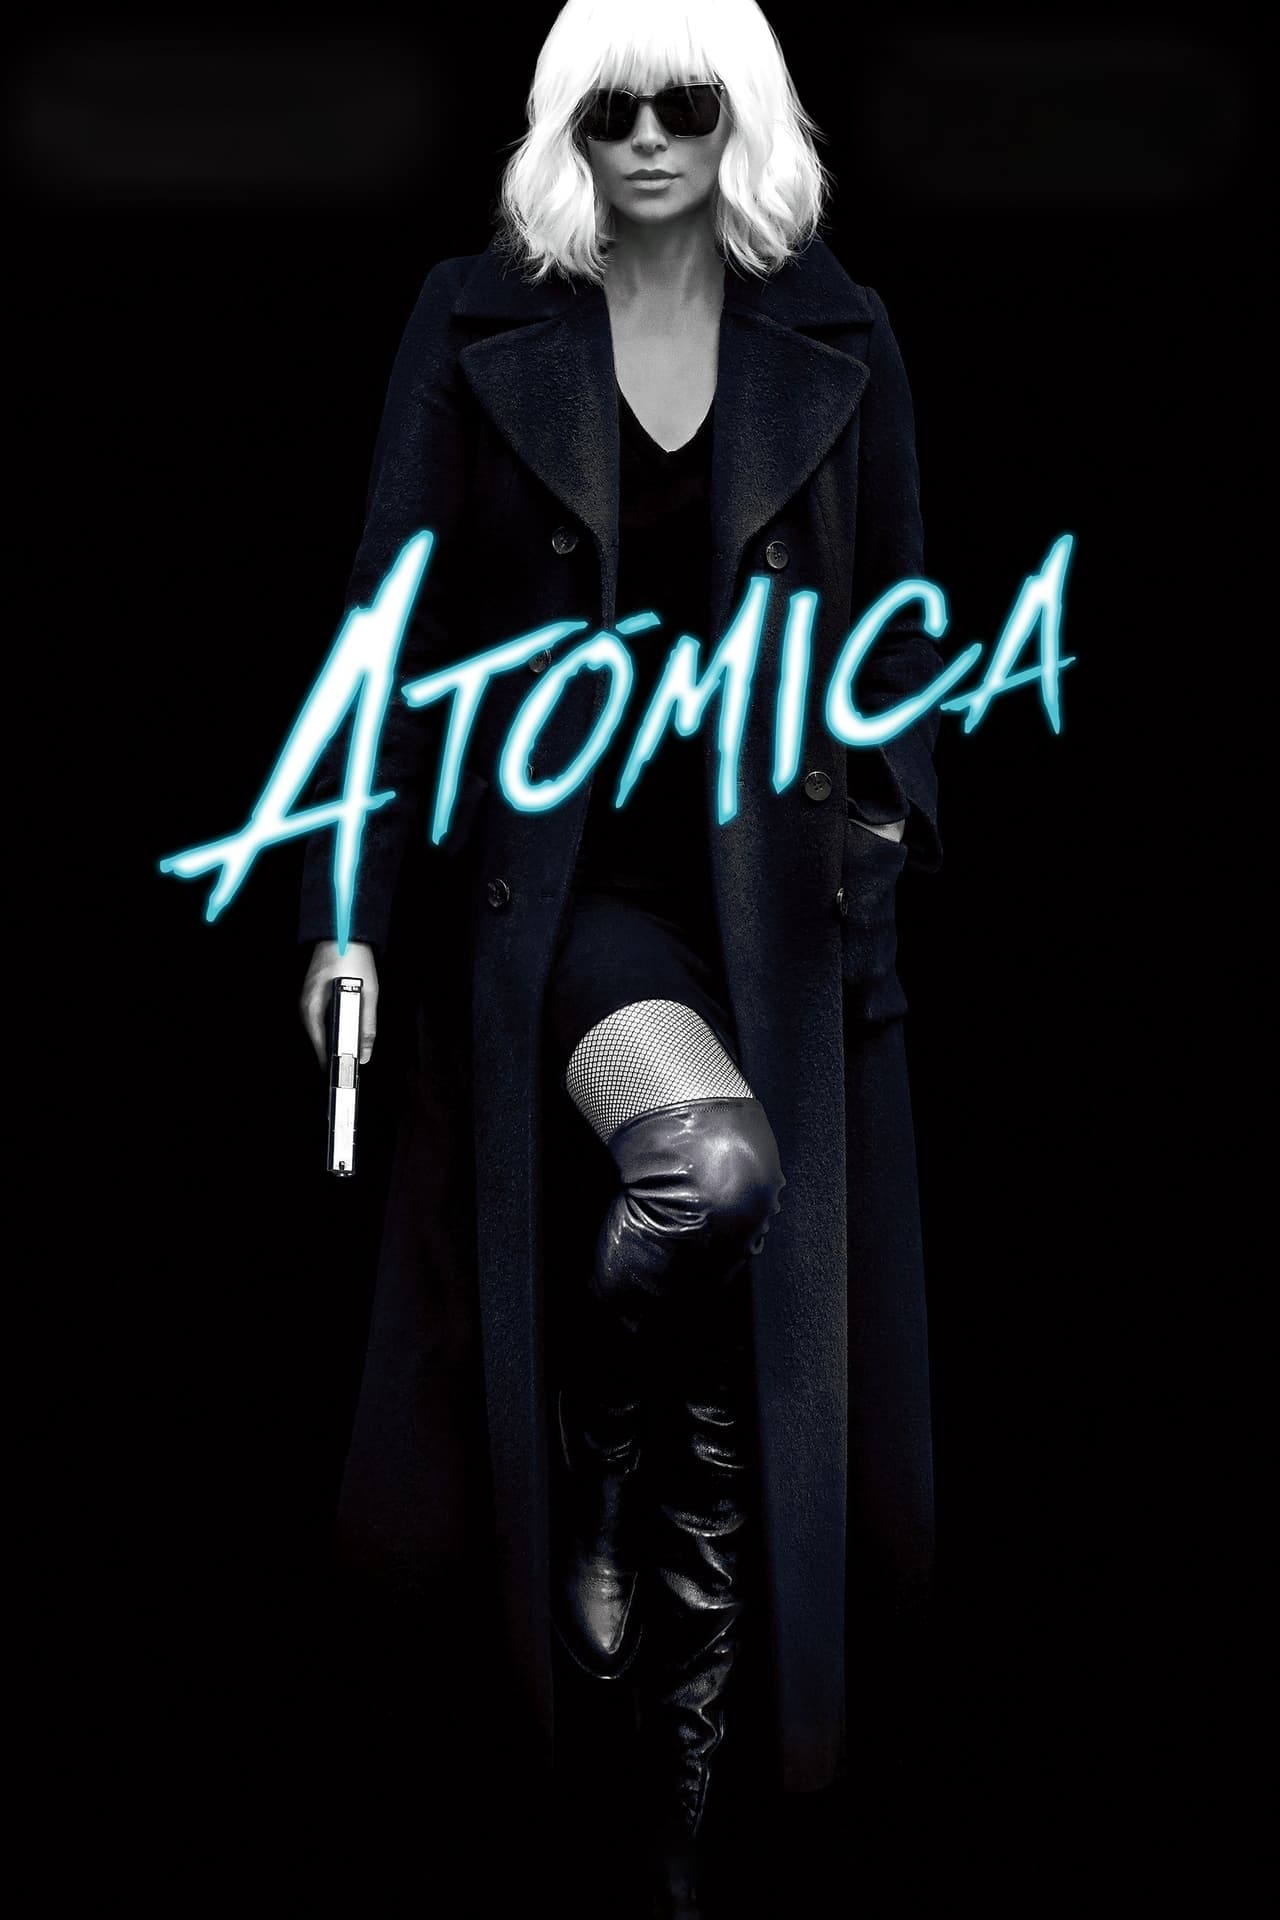 atomic blonde free movie download